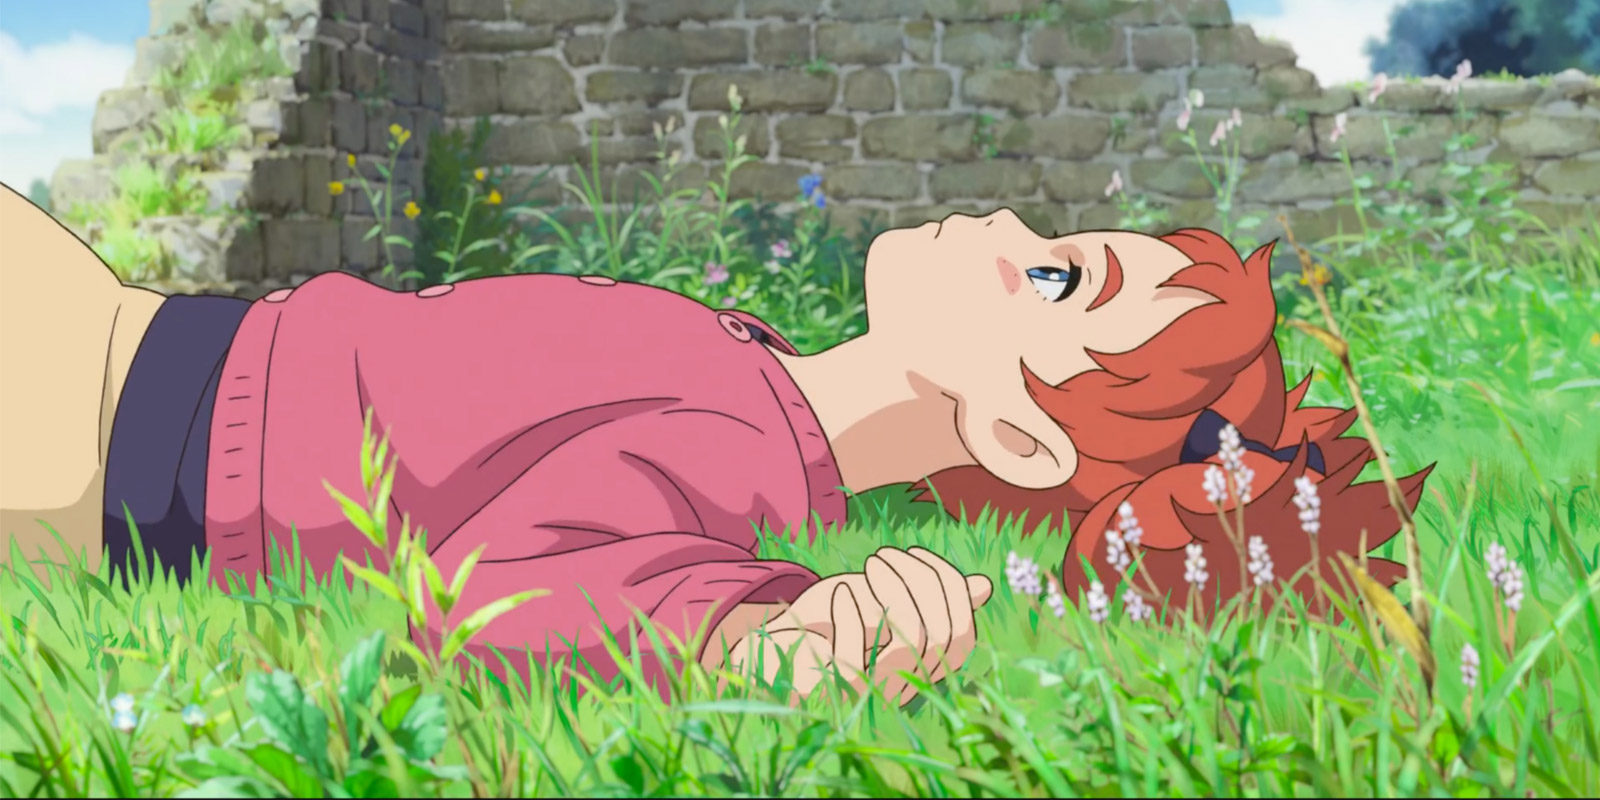 Renace la magia de Ghibli con 'Mary y la flor de la bruja', de Hiromasa Yonebayashi